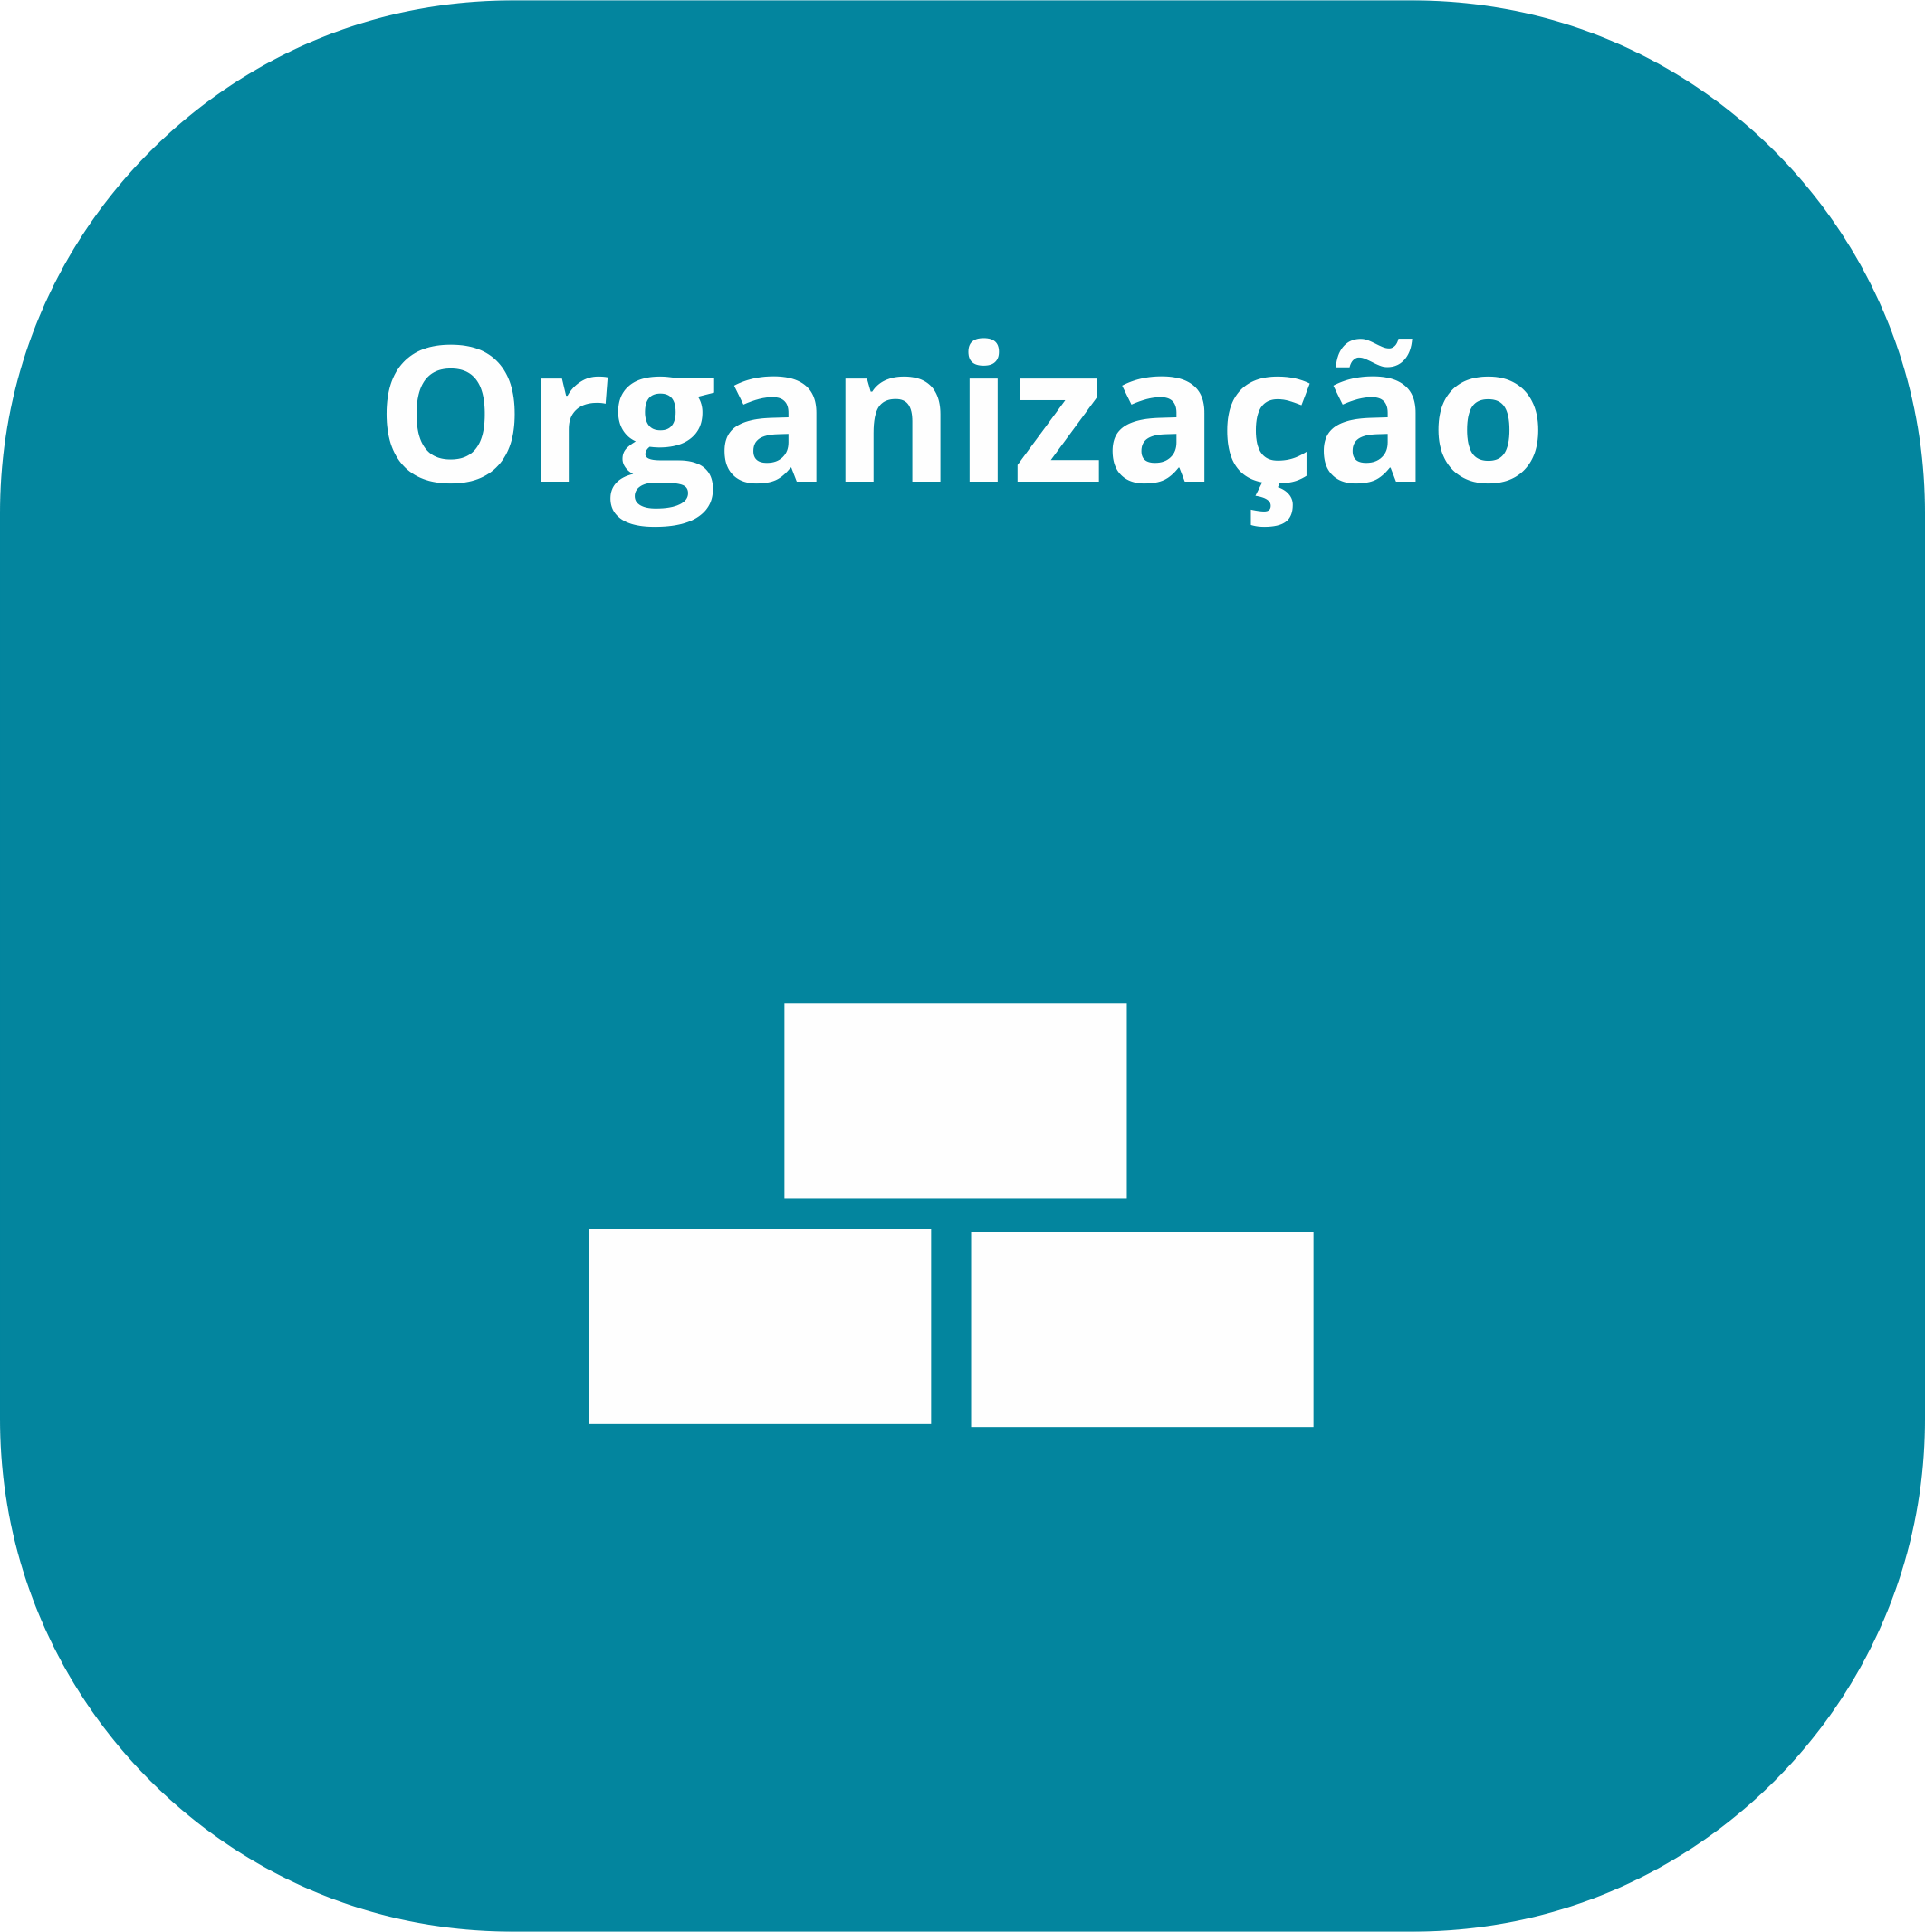 Organização